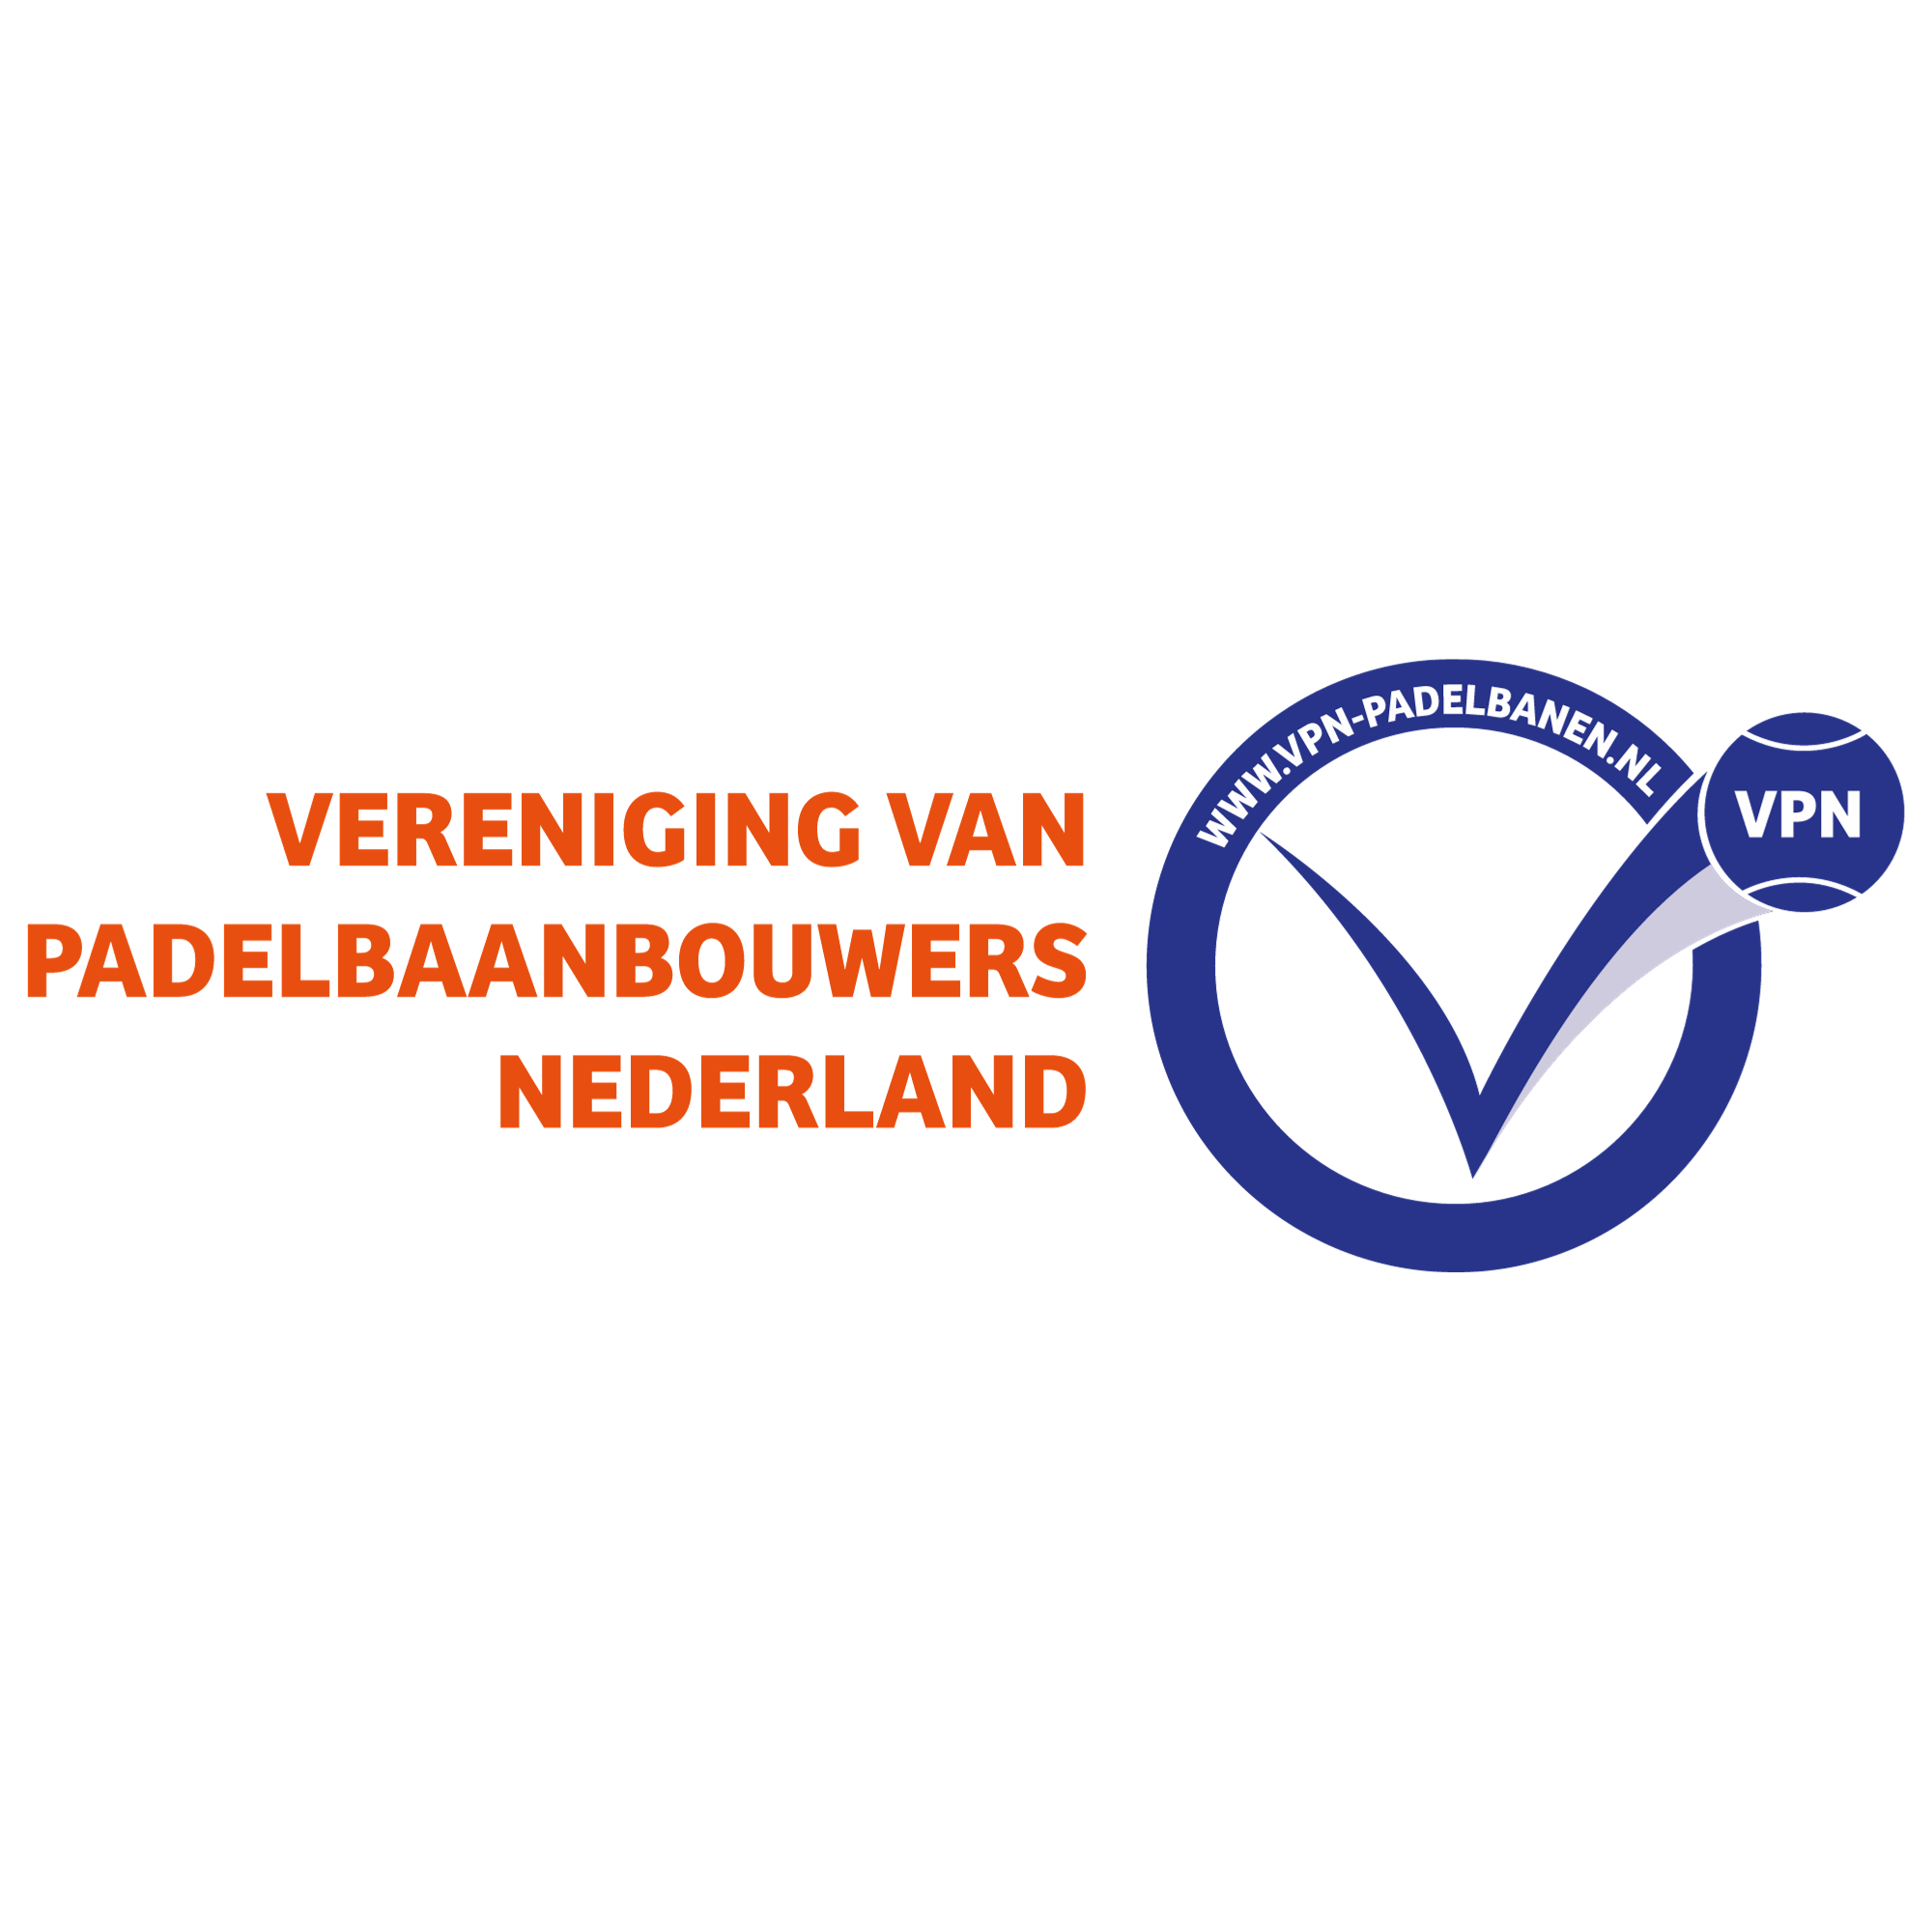 Vereniging van Padelbaanbouwers Nederland